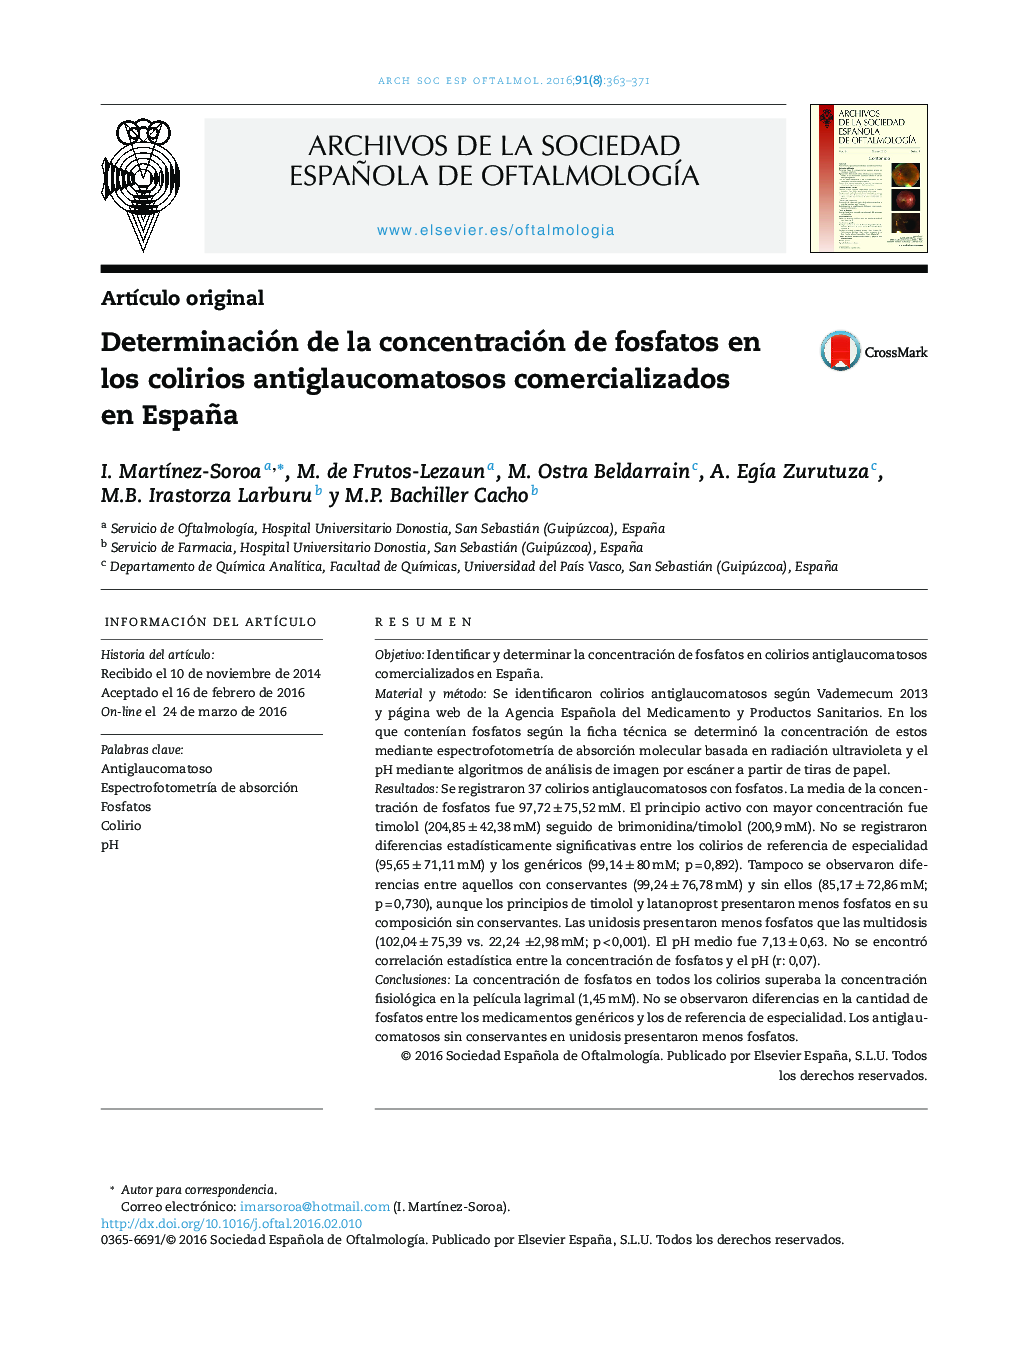 Determinación de la concentración de fosfatos en los colirios antiglaucomatosos comercializados en España